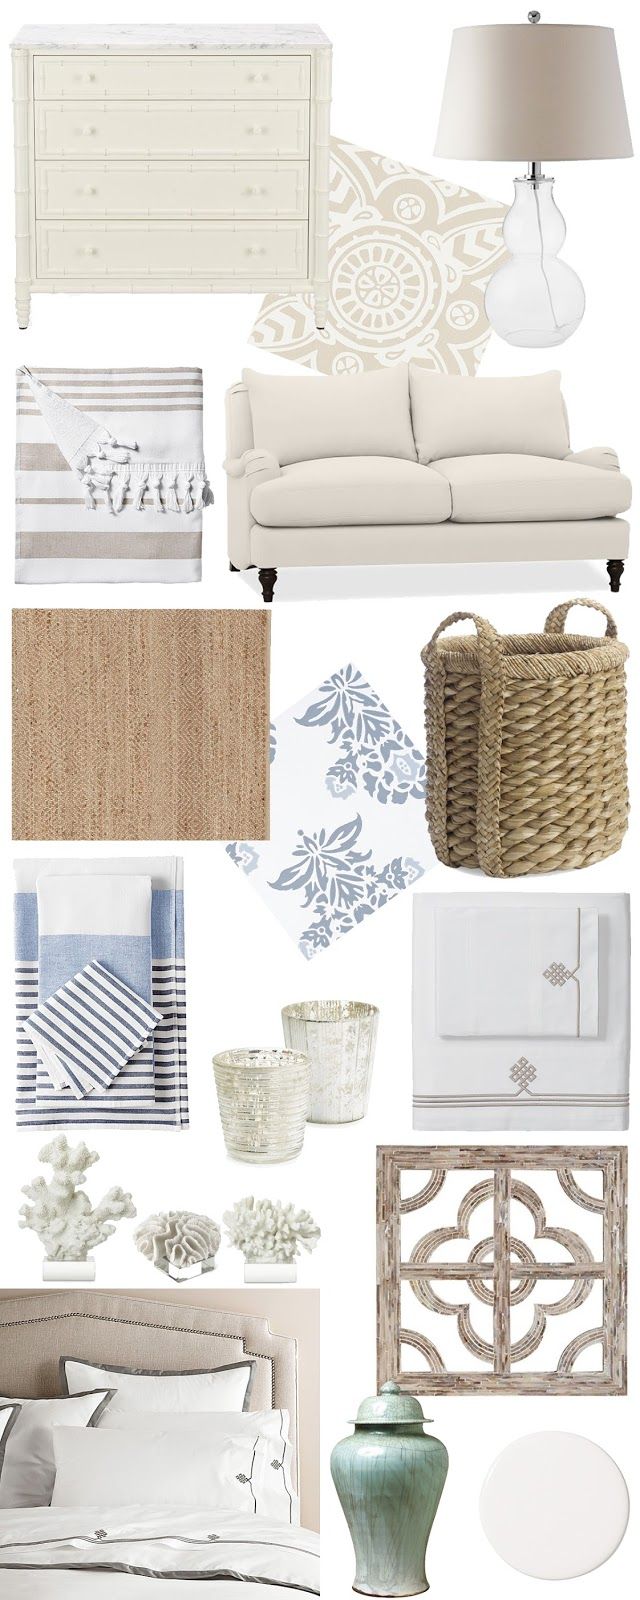 Coastal Decor, white, wicker, simplistic, furniture, home decor